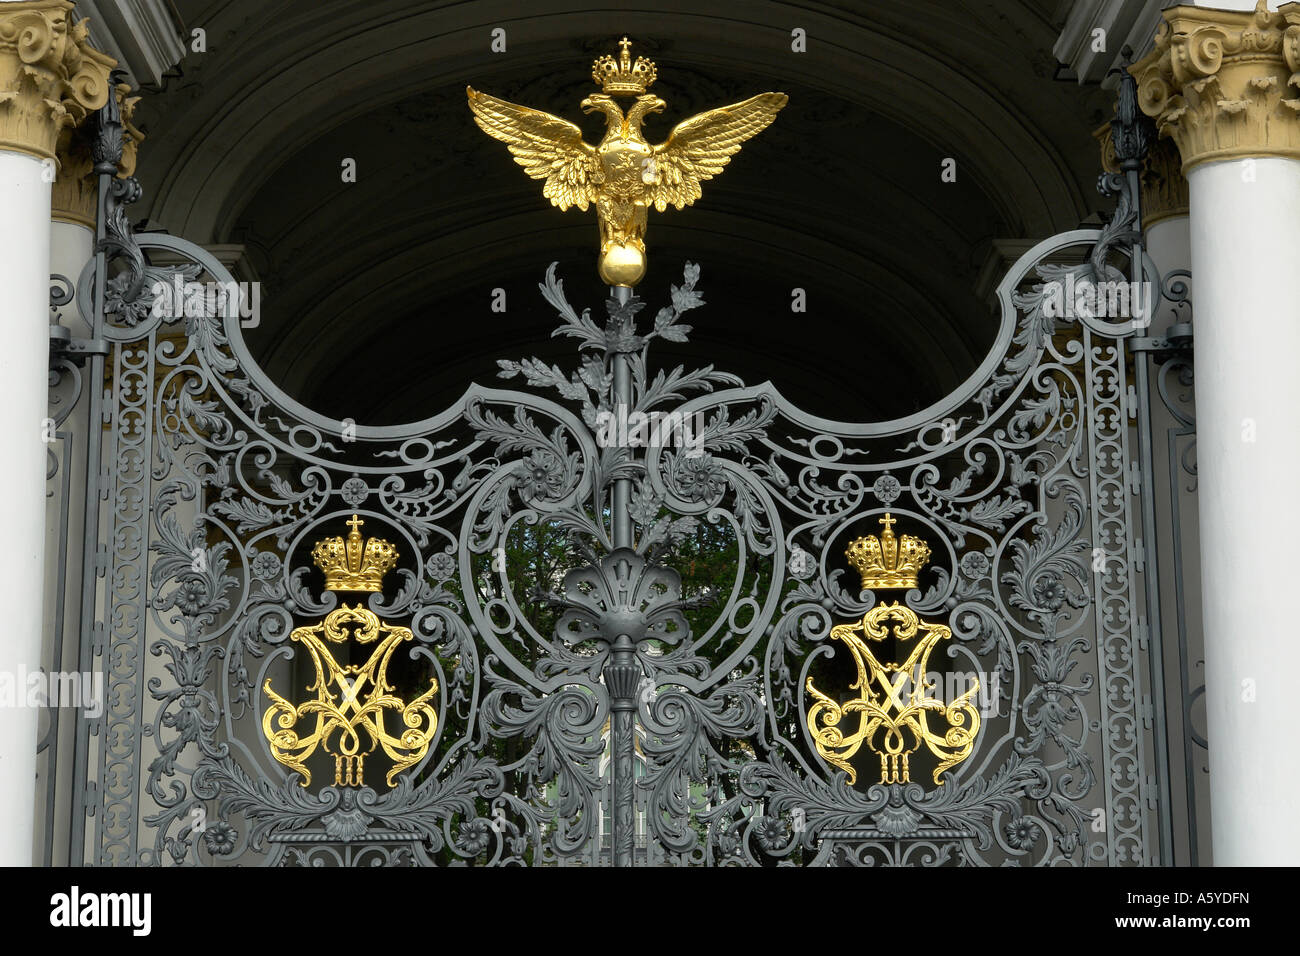 Les juges Painet2017 Fédération de Russie double headed eagle gate hermitage saint palais d'hiver st. petersburg 20060801 2 architecture Banque D'Images